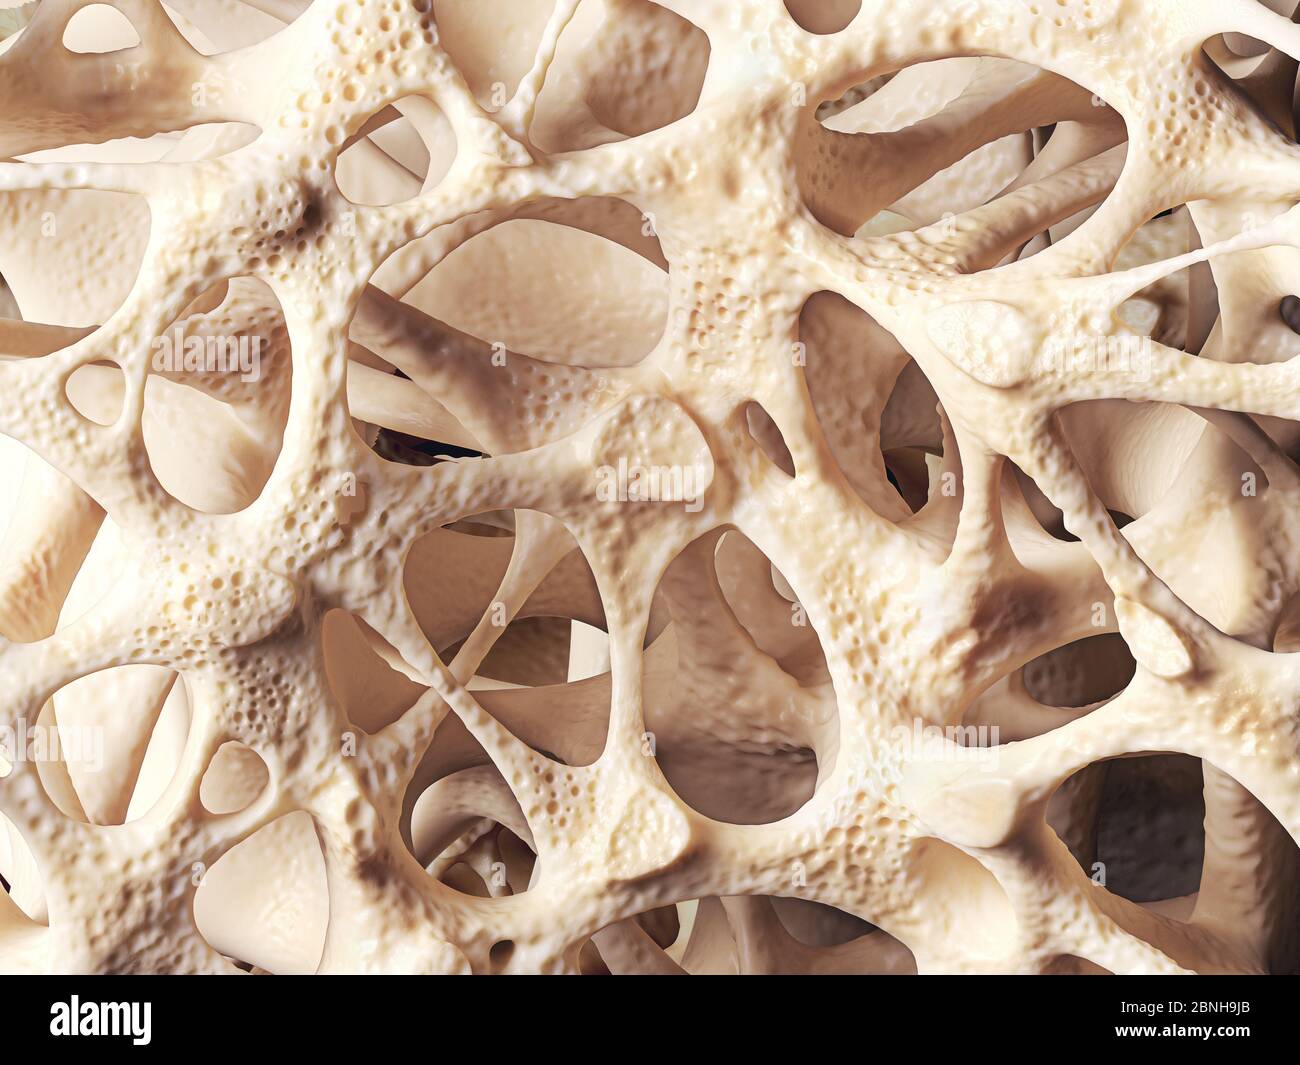 Structure spongieuse osseuse réaliste, texture osseuse affectée par l'ostéoporose, illustration 3d Banque D'Images